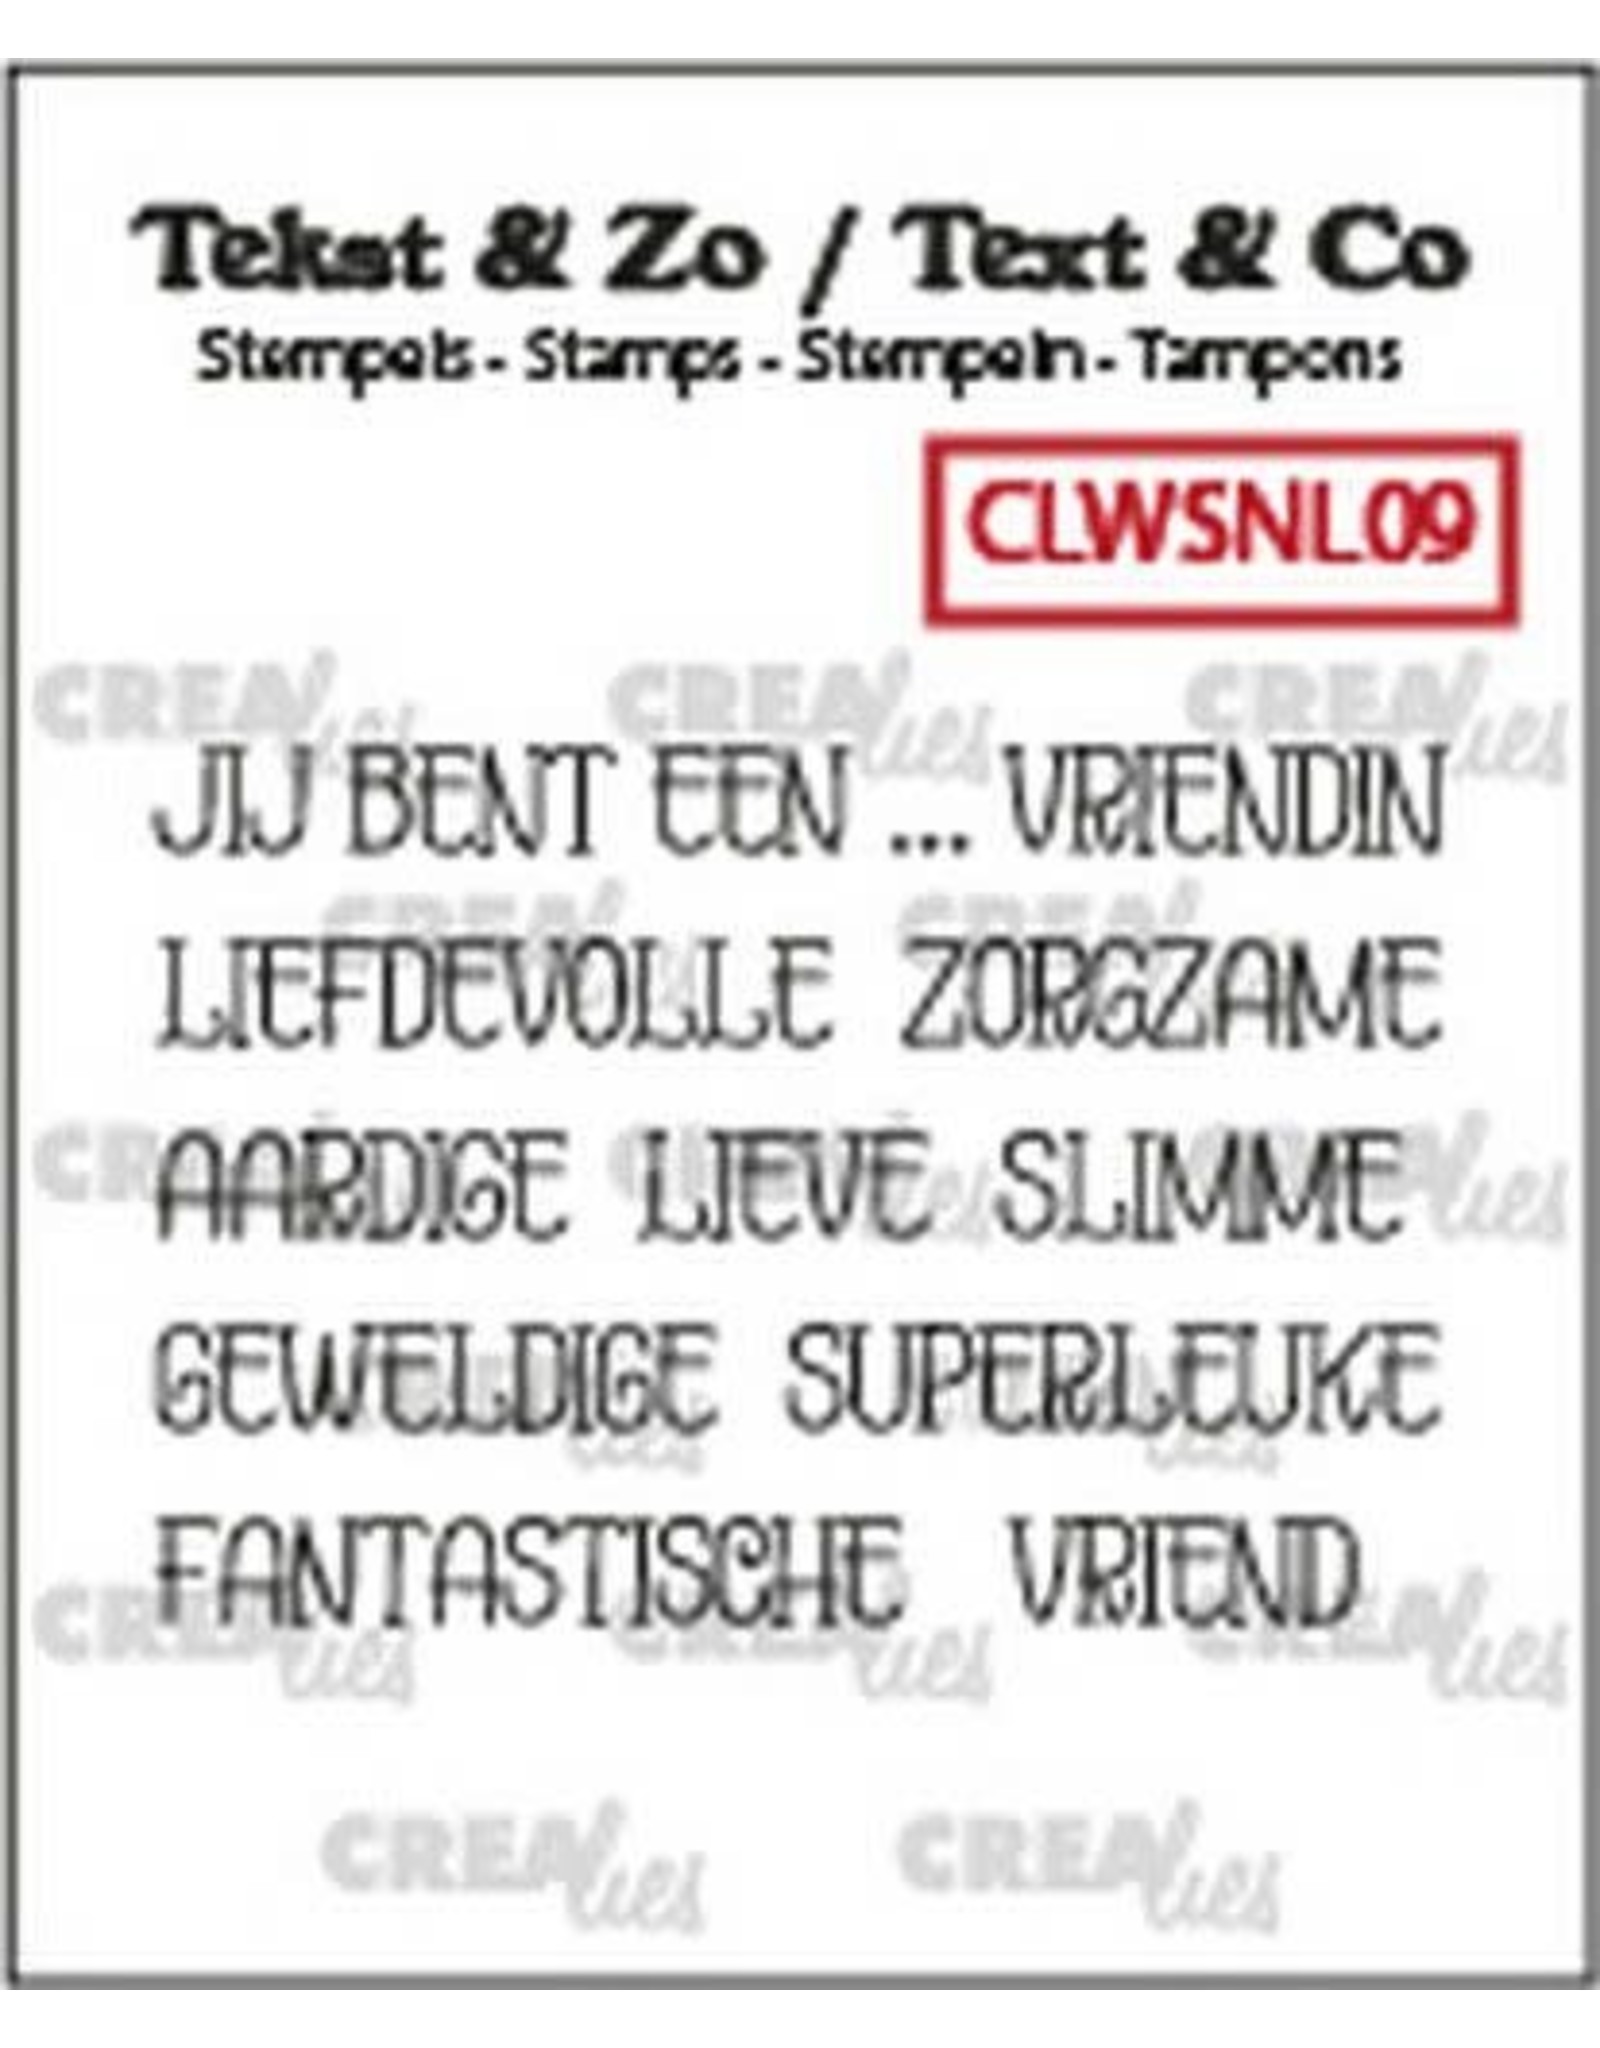 Crealies Crealies Clearstamp Tekst & Zo woordstrips Jij bent een... (NL) CLWSNL09